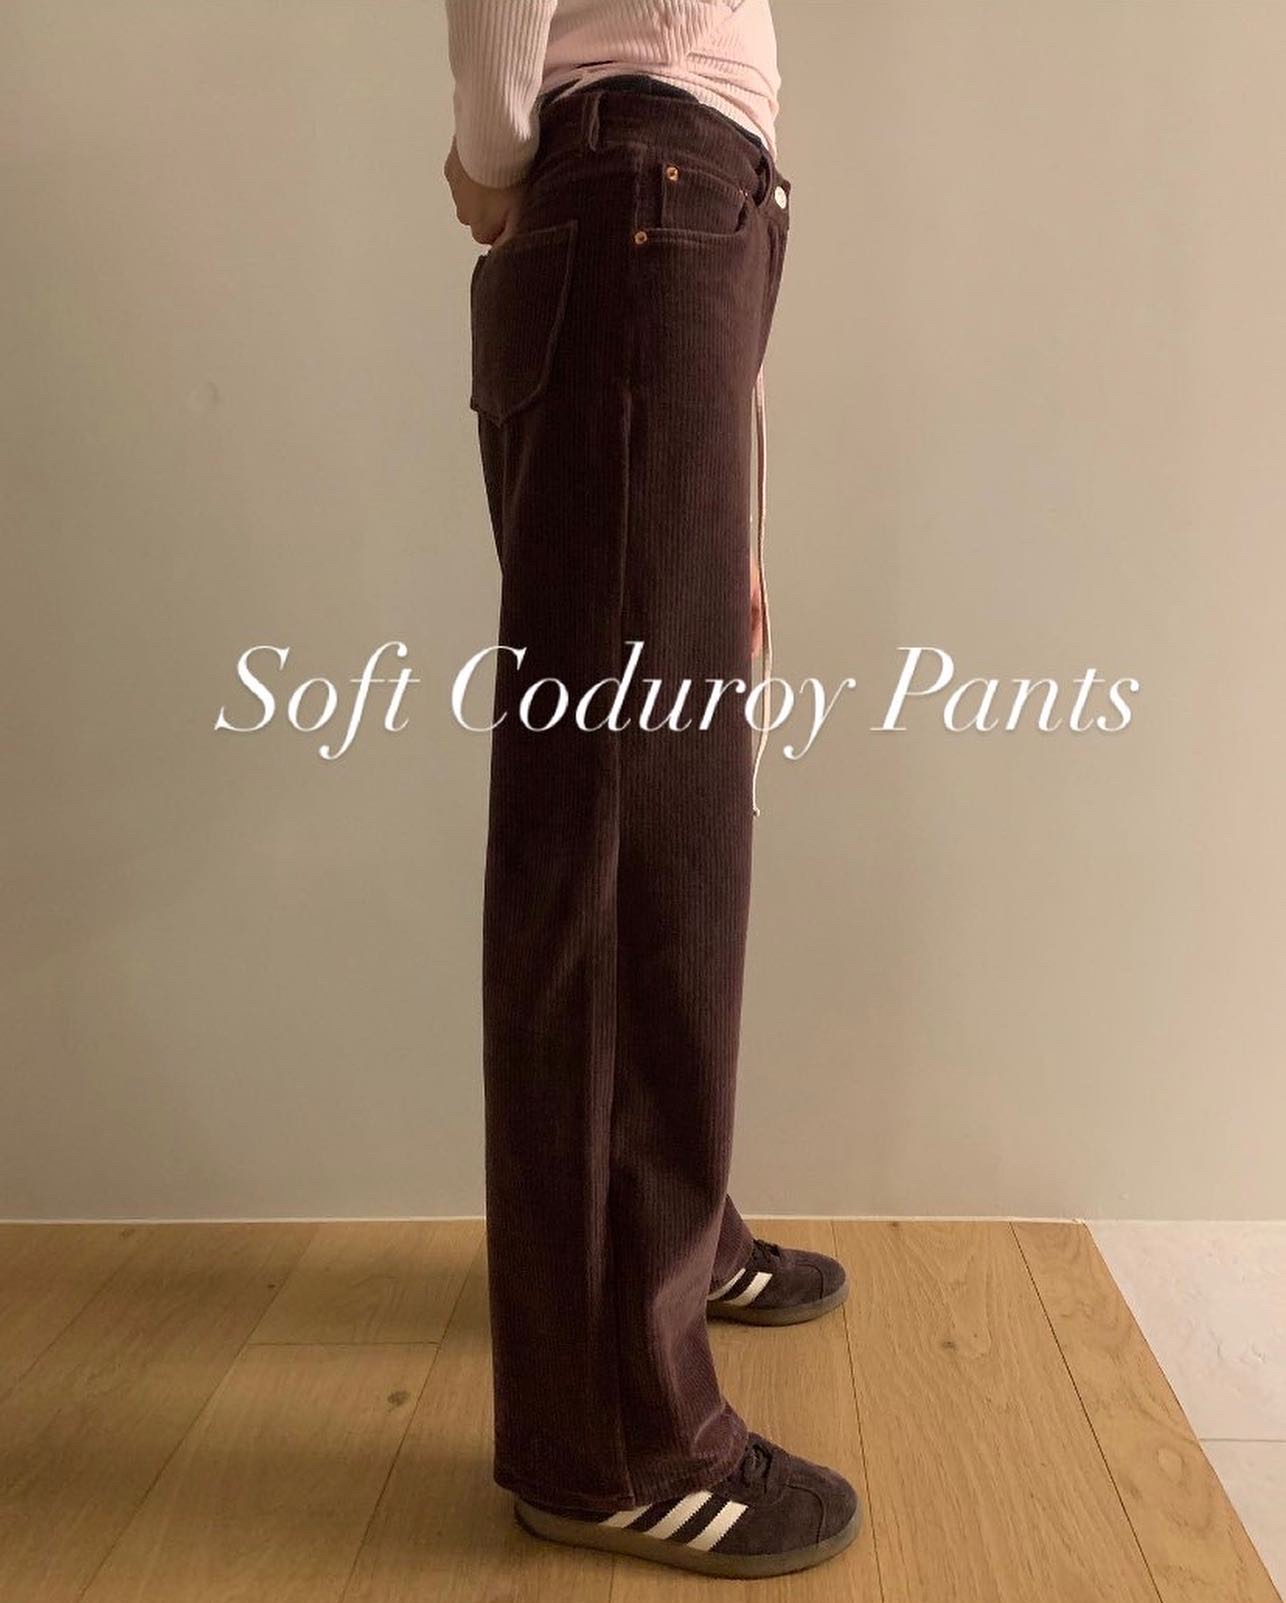 [프리오더] Soft Coduroy Pants